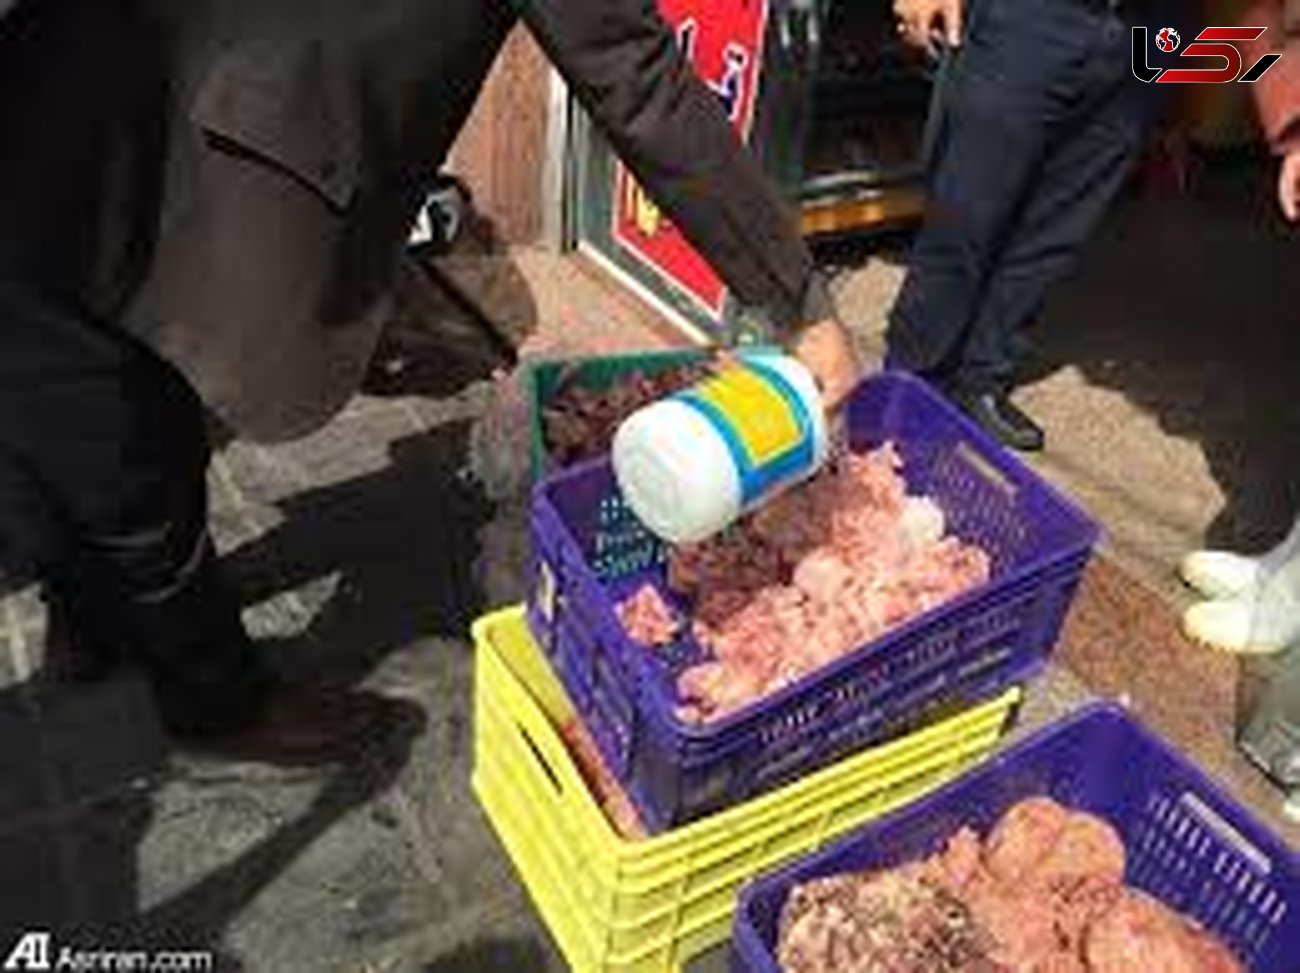 گرانفروشان گوشت مرغ در قزوین نقره داغ شدند/ جریمه میلیاردی و پلمپ در انتظار متخلفان است